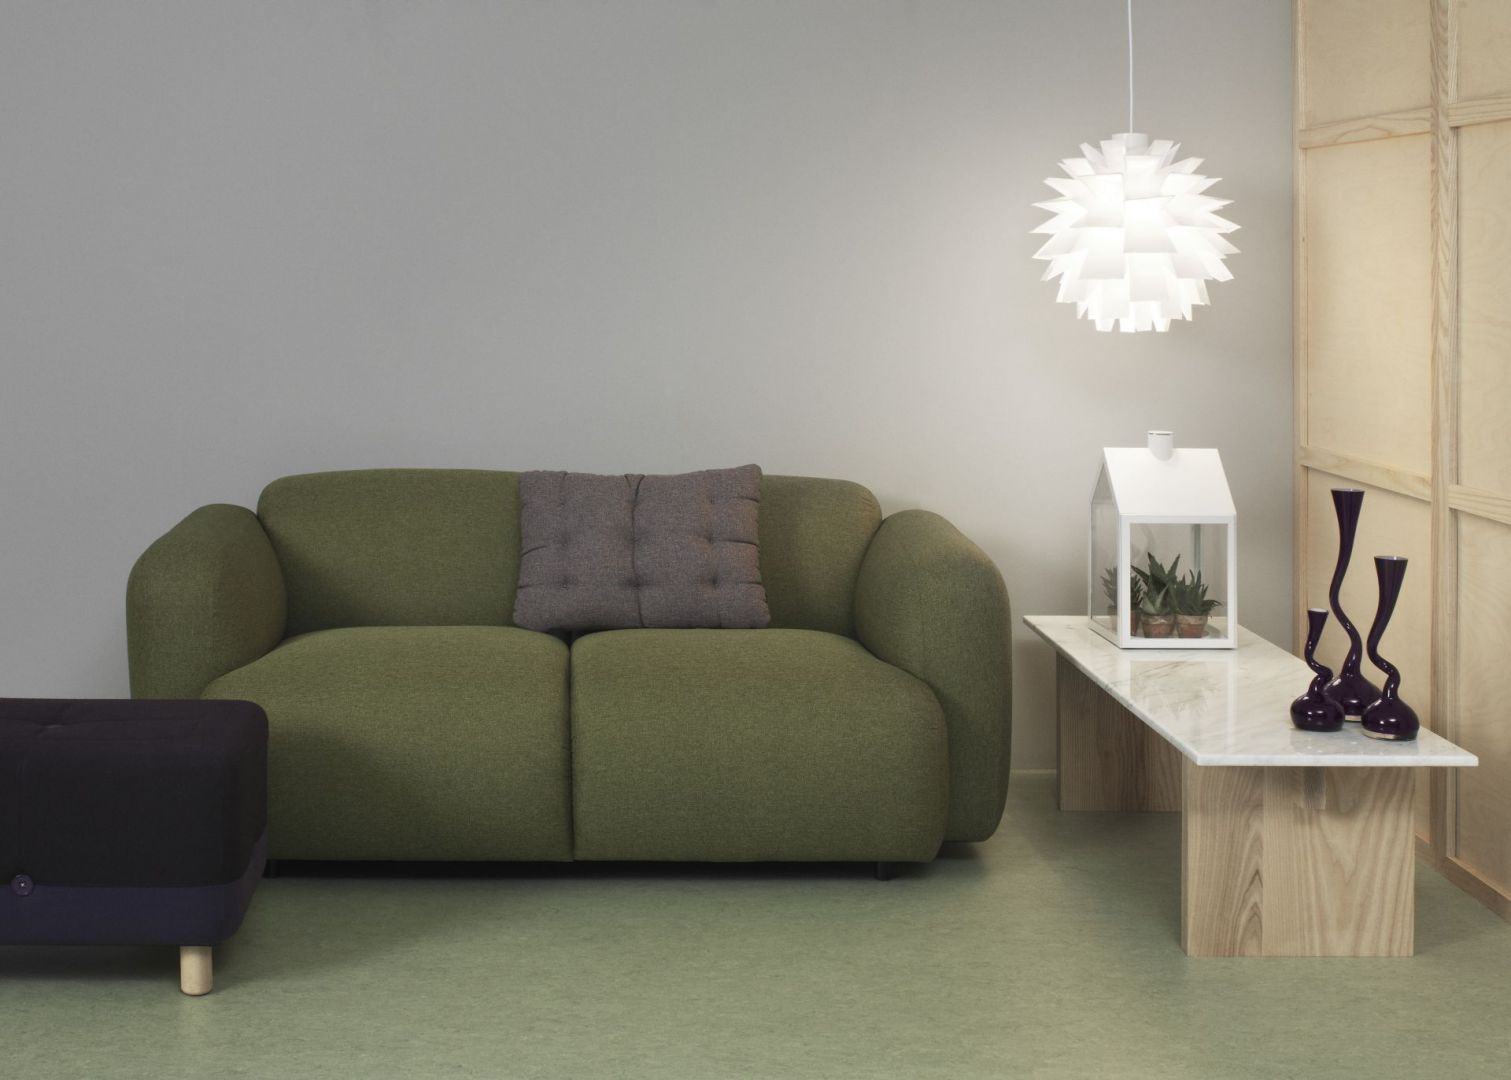 Sofa Swell ma opływowe, nieco pulchne kształty dzięki czemu zapewnia maksymalną wygodę. Fot. Normann Copenhagen